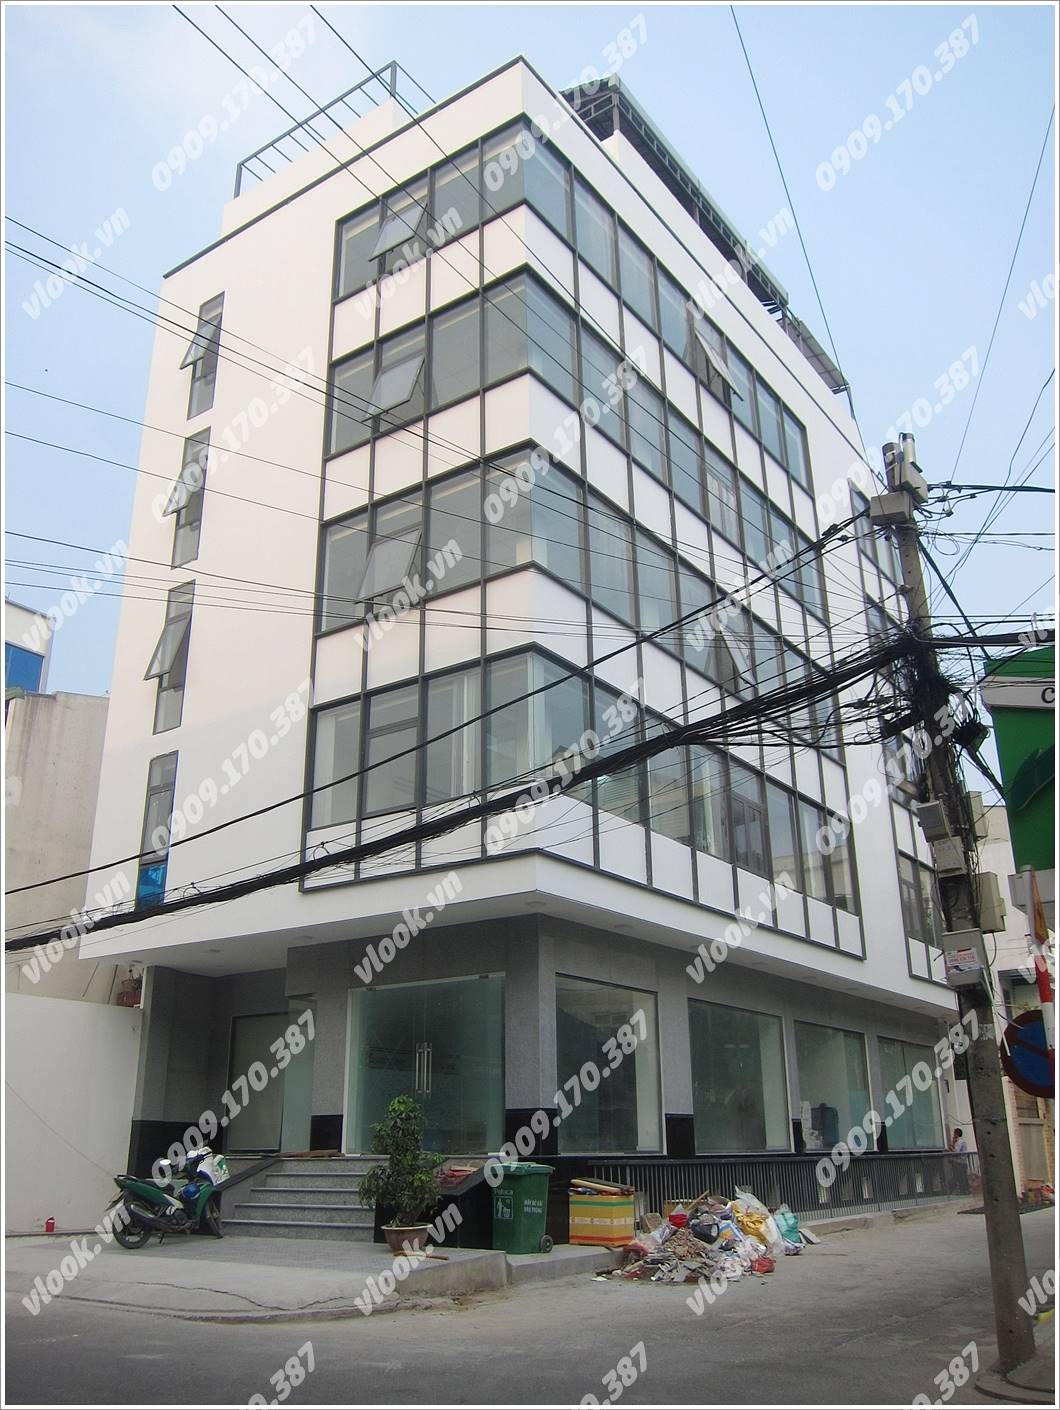 Cao ốc văn phòng cho thuê Vin Tower, Quách Văn Tuấn, Quận Tân Bình, TP.HCM - vlook.vn